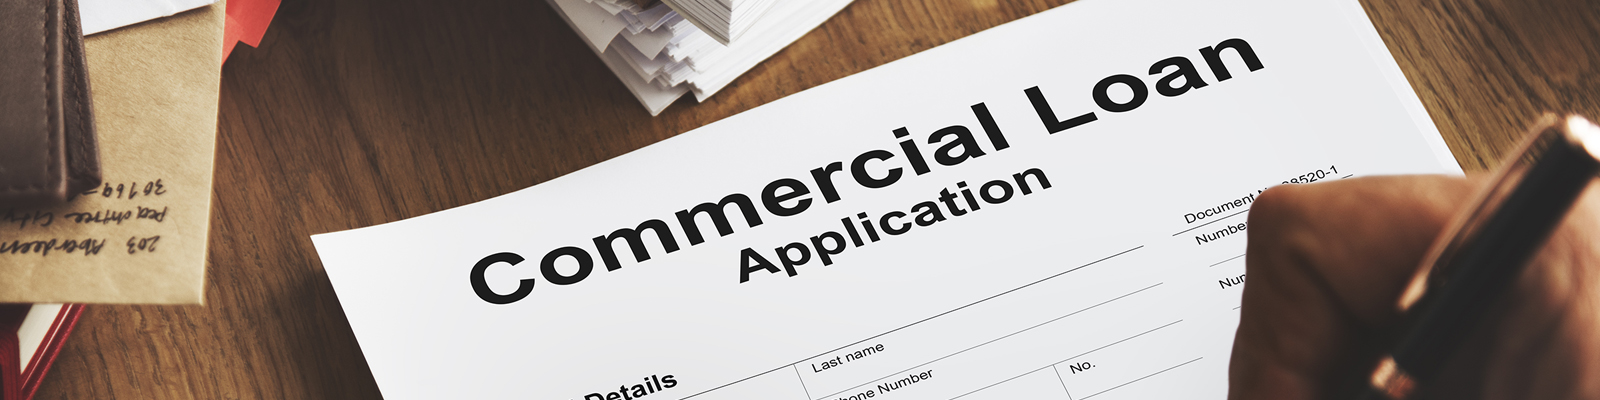  Commercial Loan